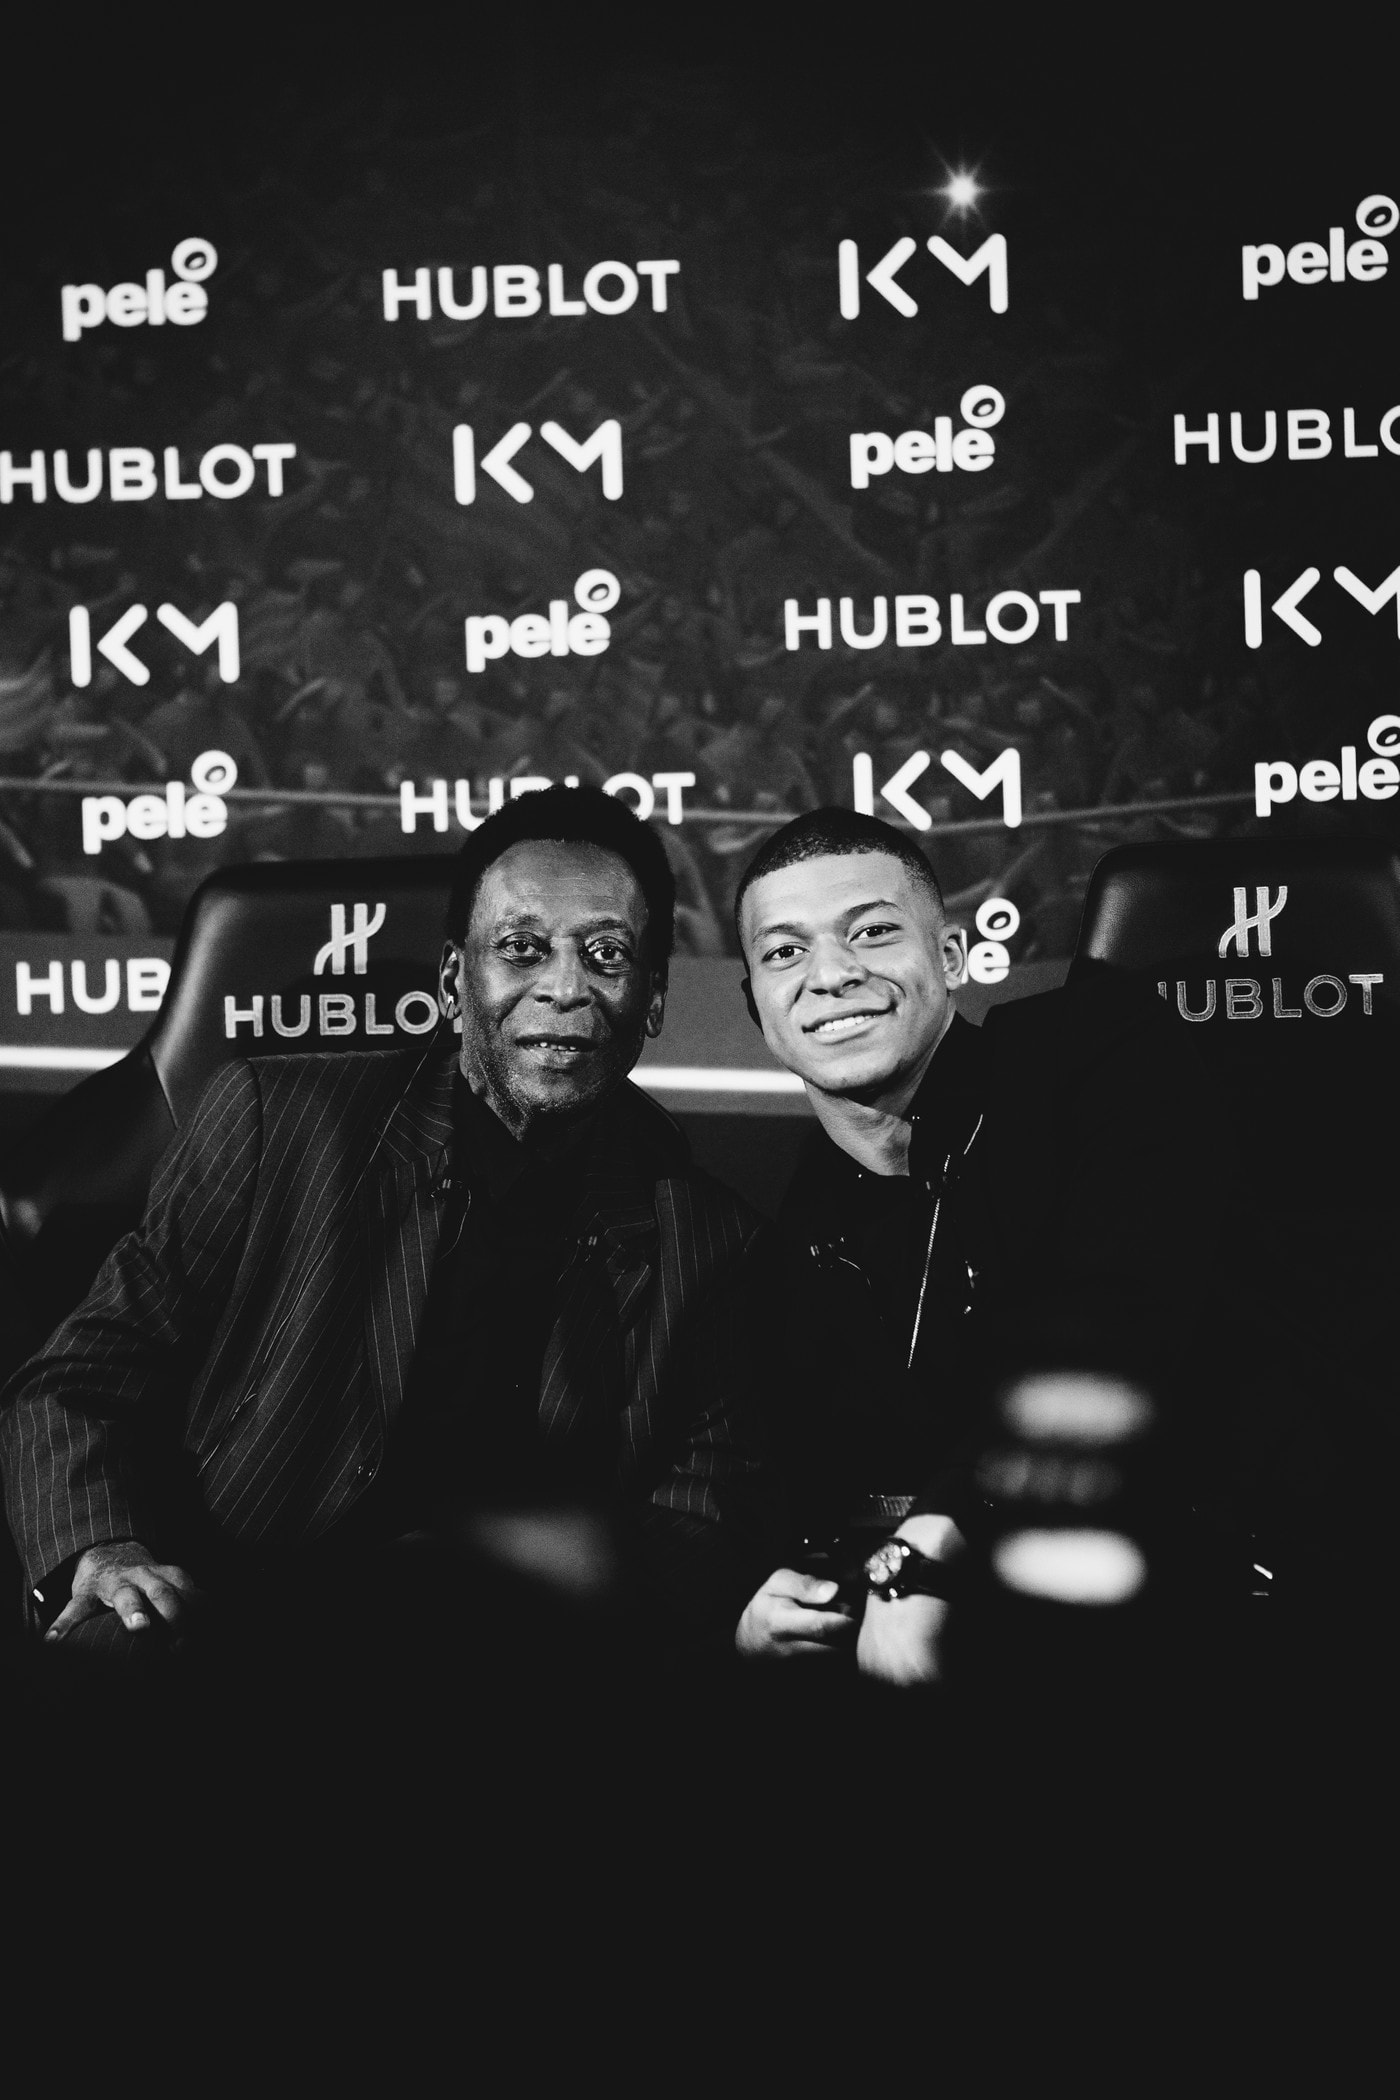 Kylian Mbappé & Pelé Interview hublot football soccer psg paris saint germain france paris hypebeast france